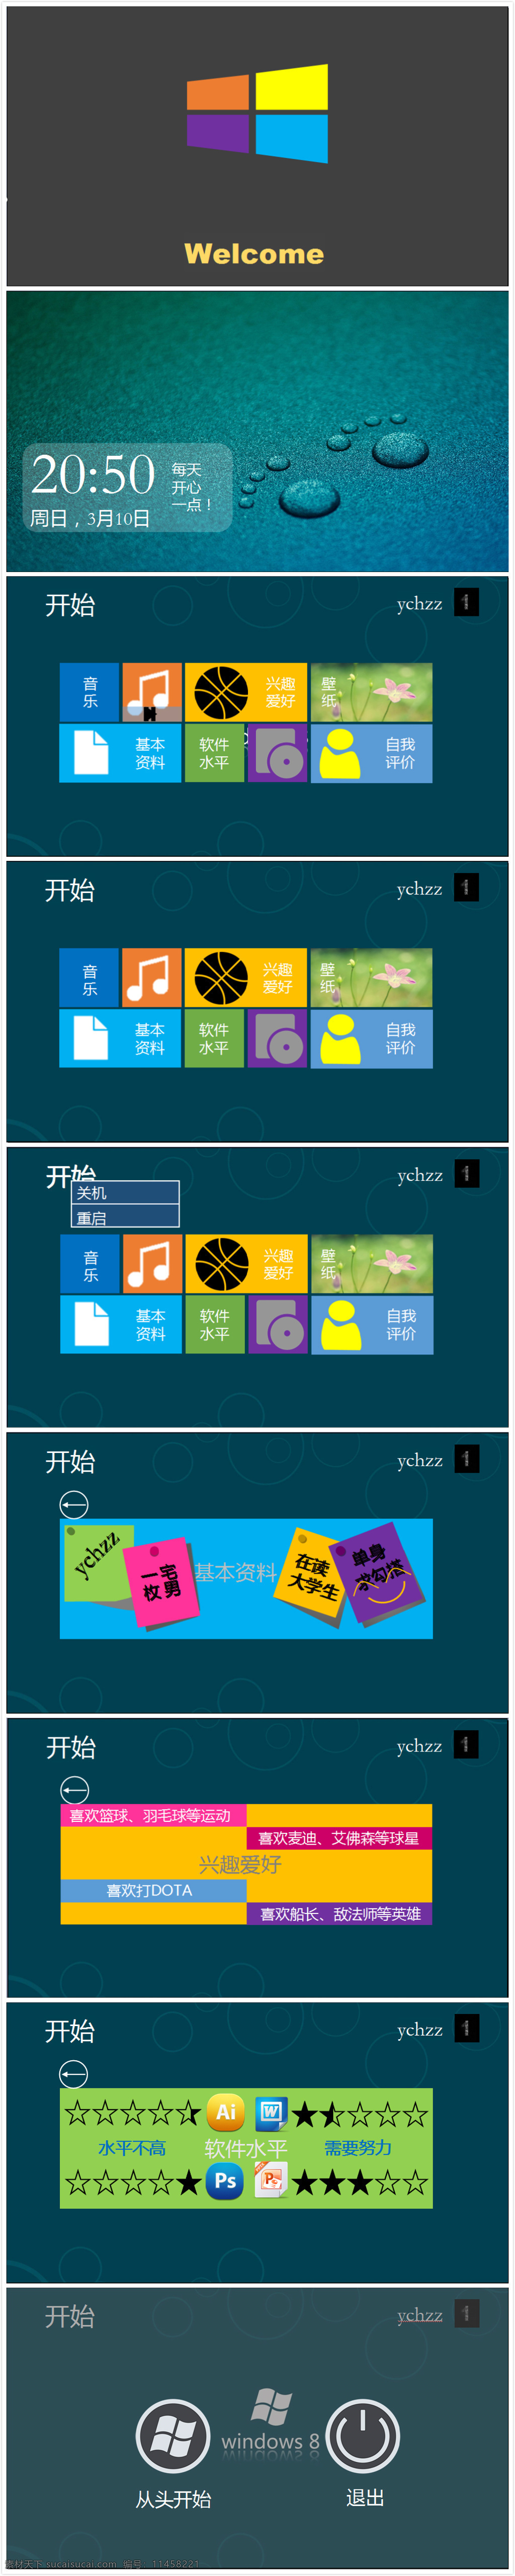 微软 win8 风格 模板